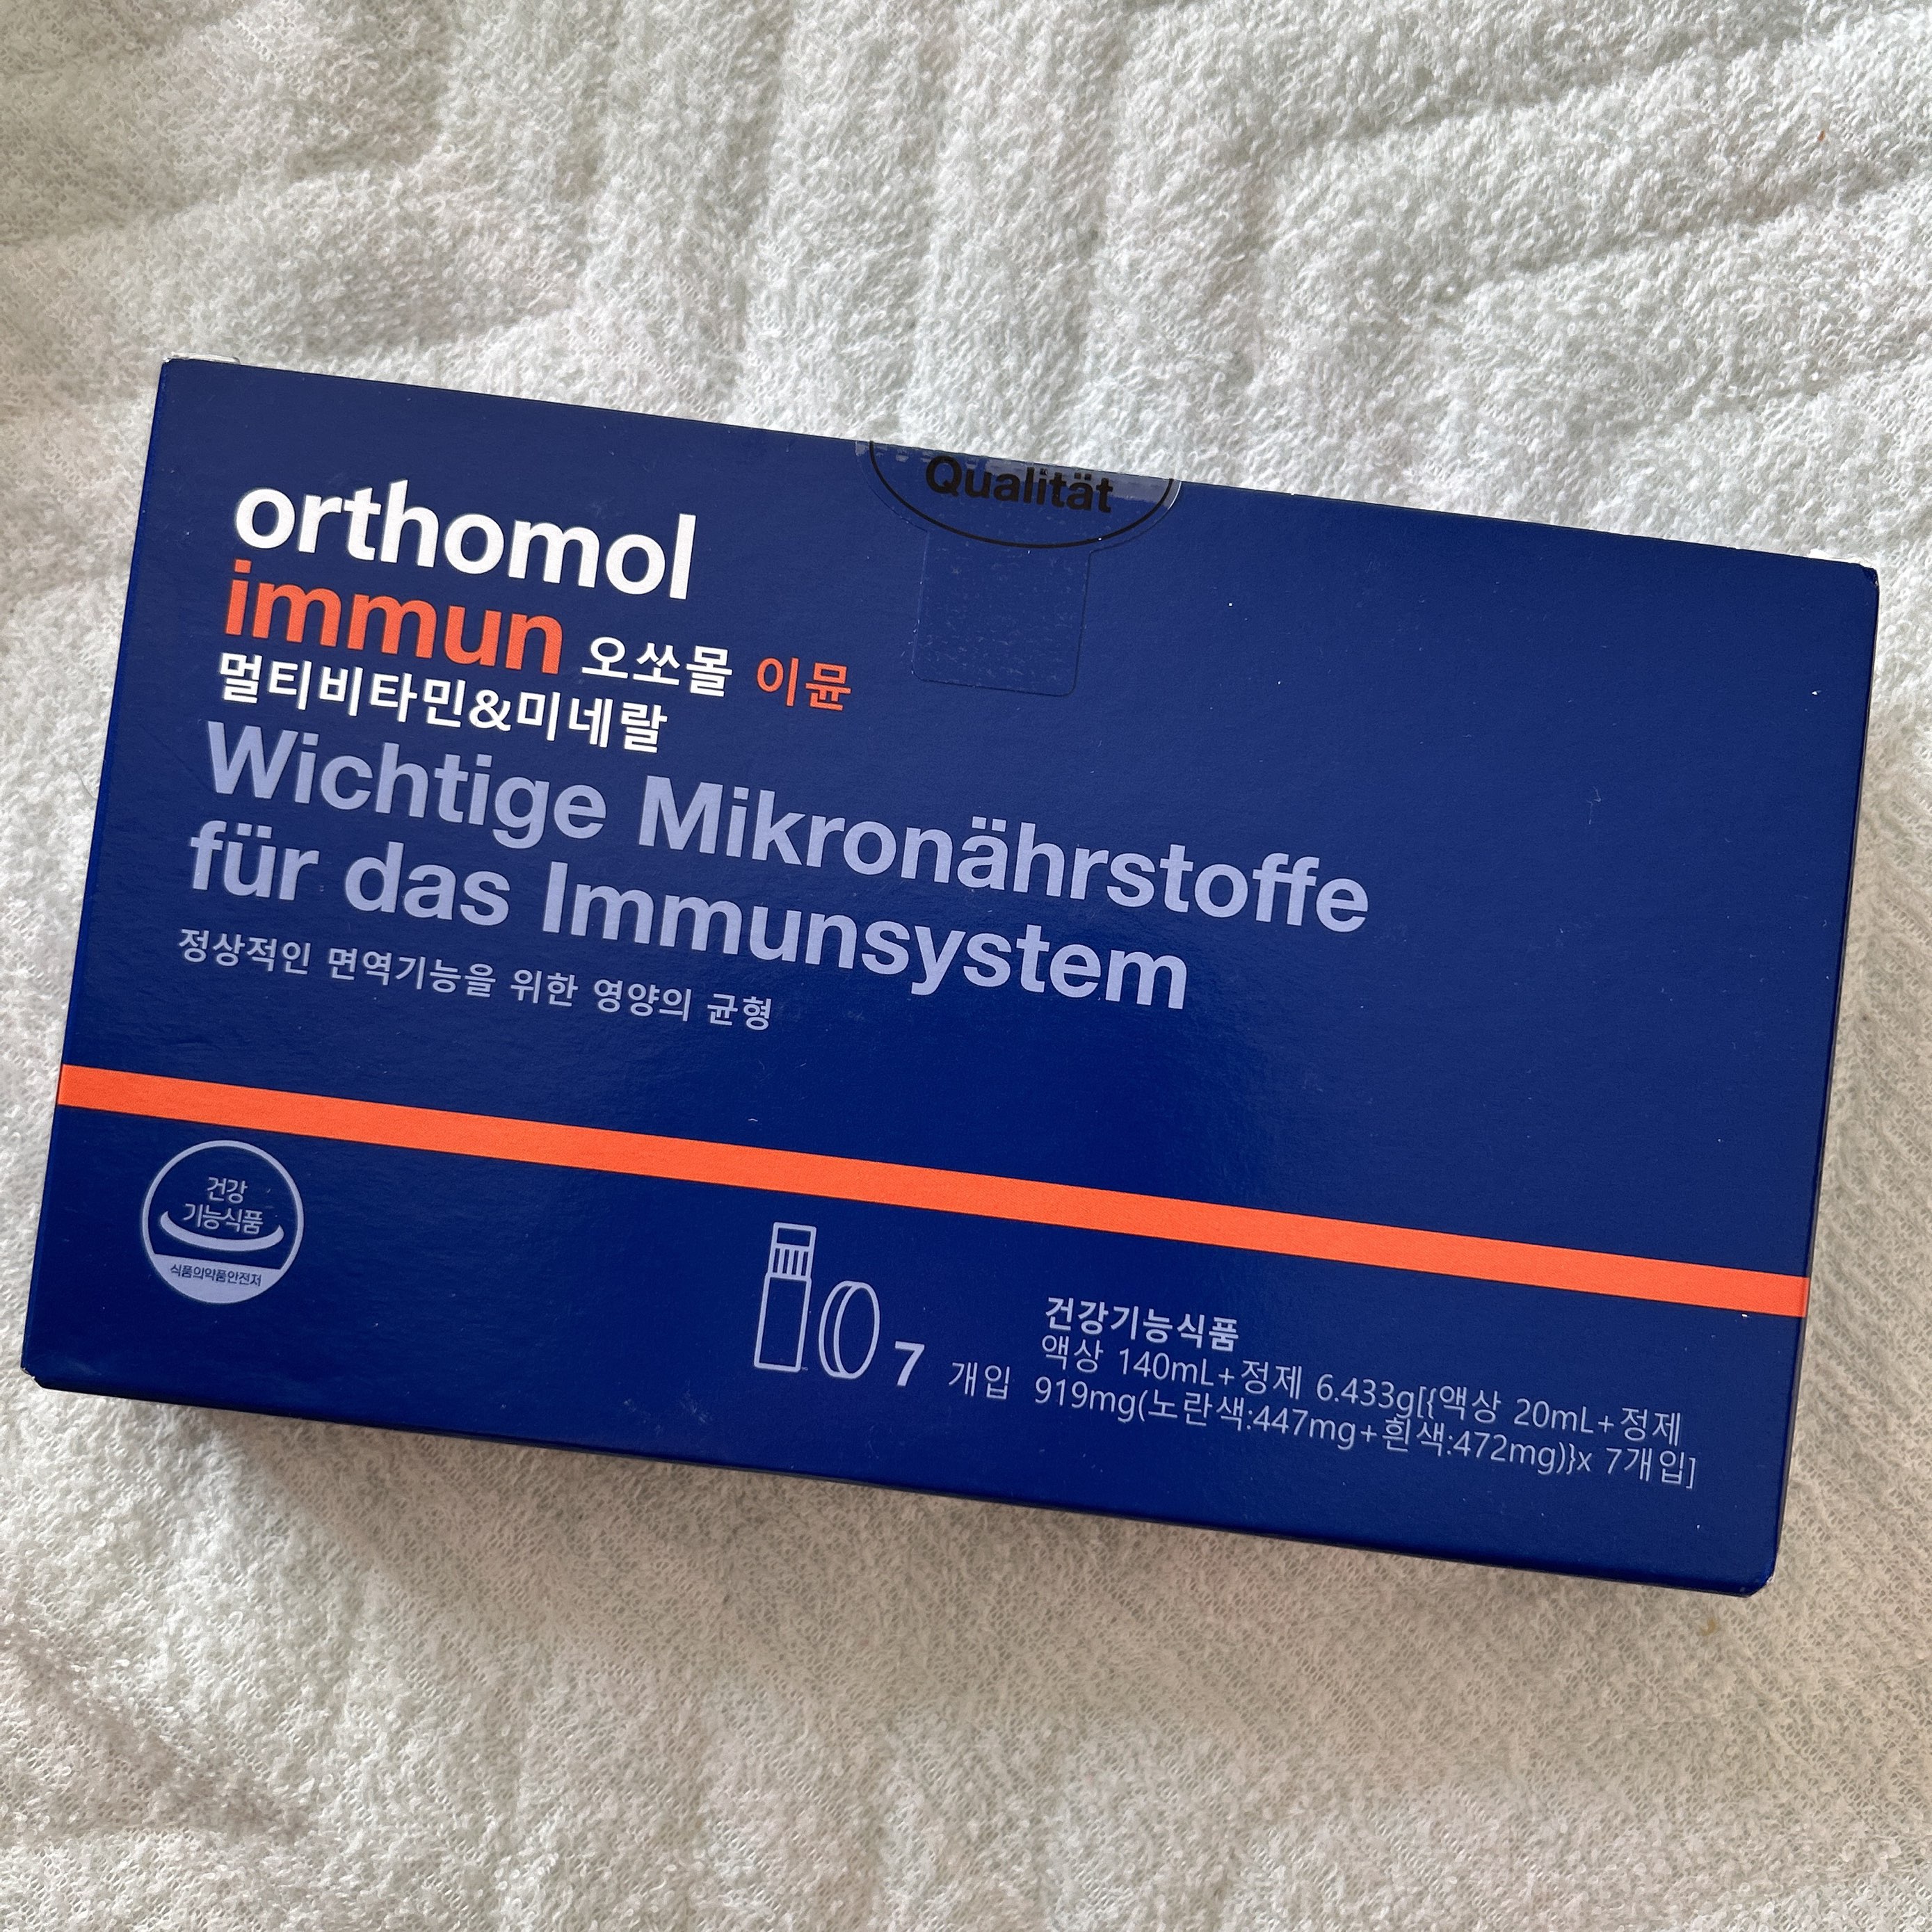 飲むエルメス　orthomol immun  オーソモルイミューン　30本